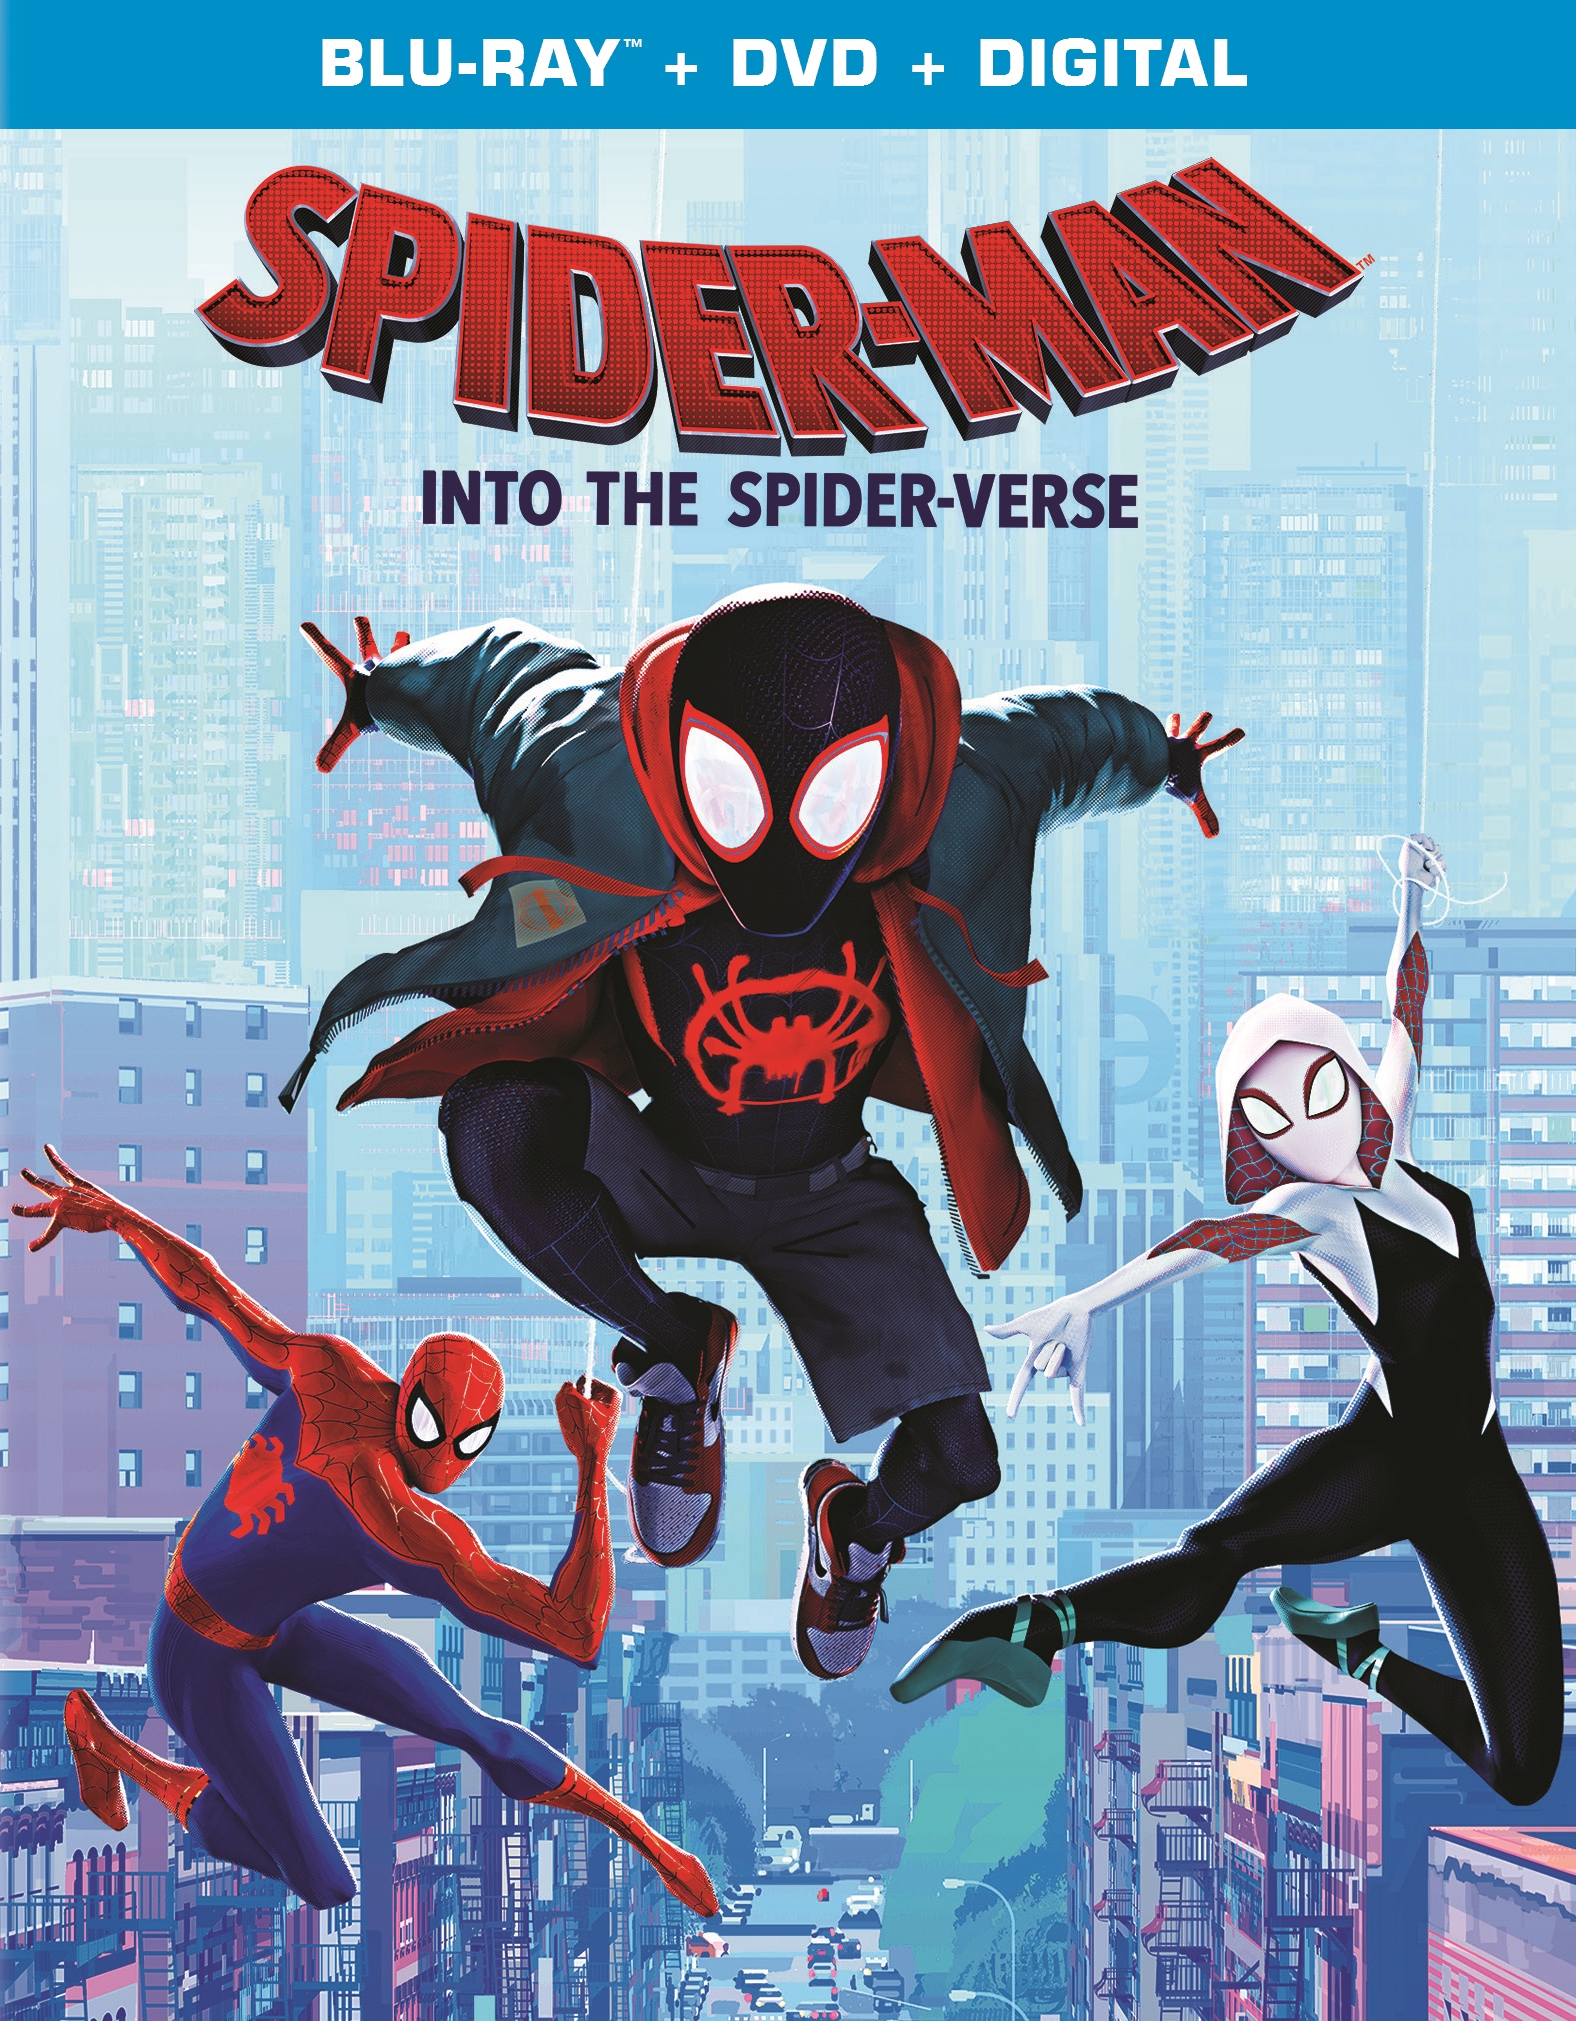 Interpunctie bus Vorige Spider-Man: Into the Spider-Verse [Includes Digital Copy] [Blu-ray/DVD]  [2018] - Best Buy